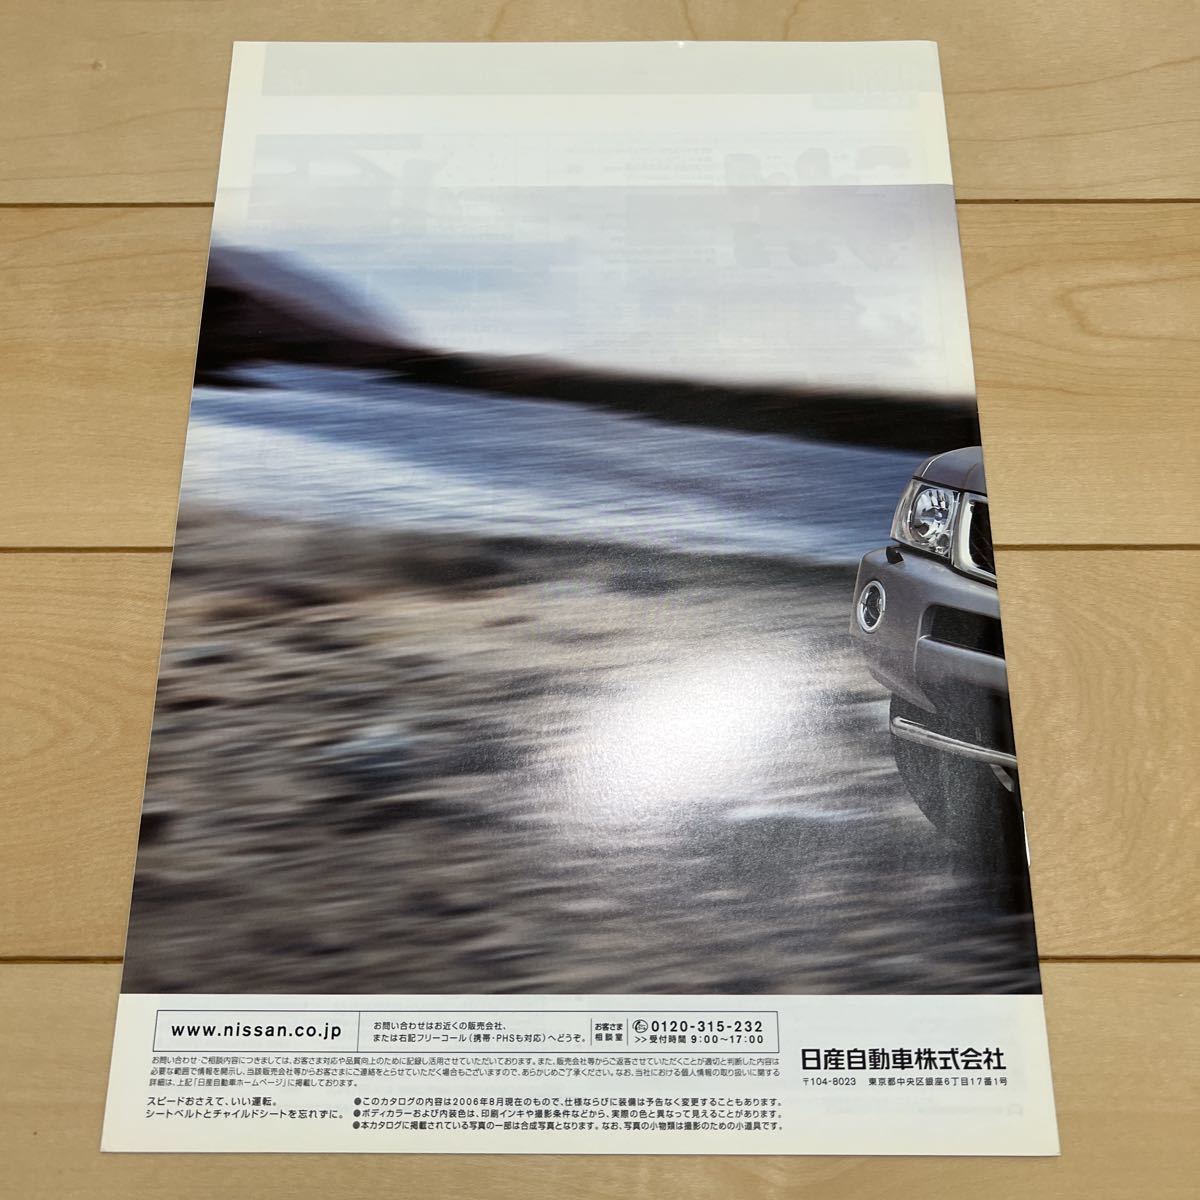 #0902 日産 サファリ Y61 カタログ 31ページ オプションカタログ付き (2006.8発行)_画像5